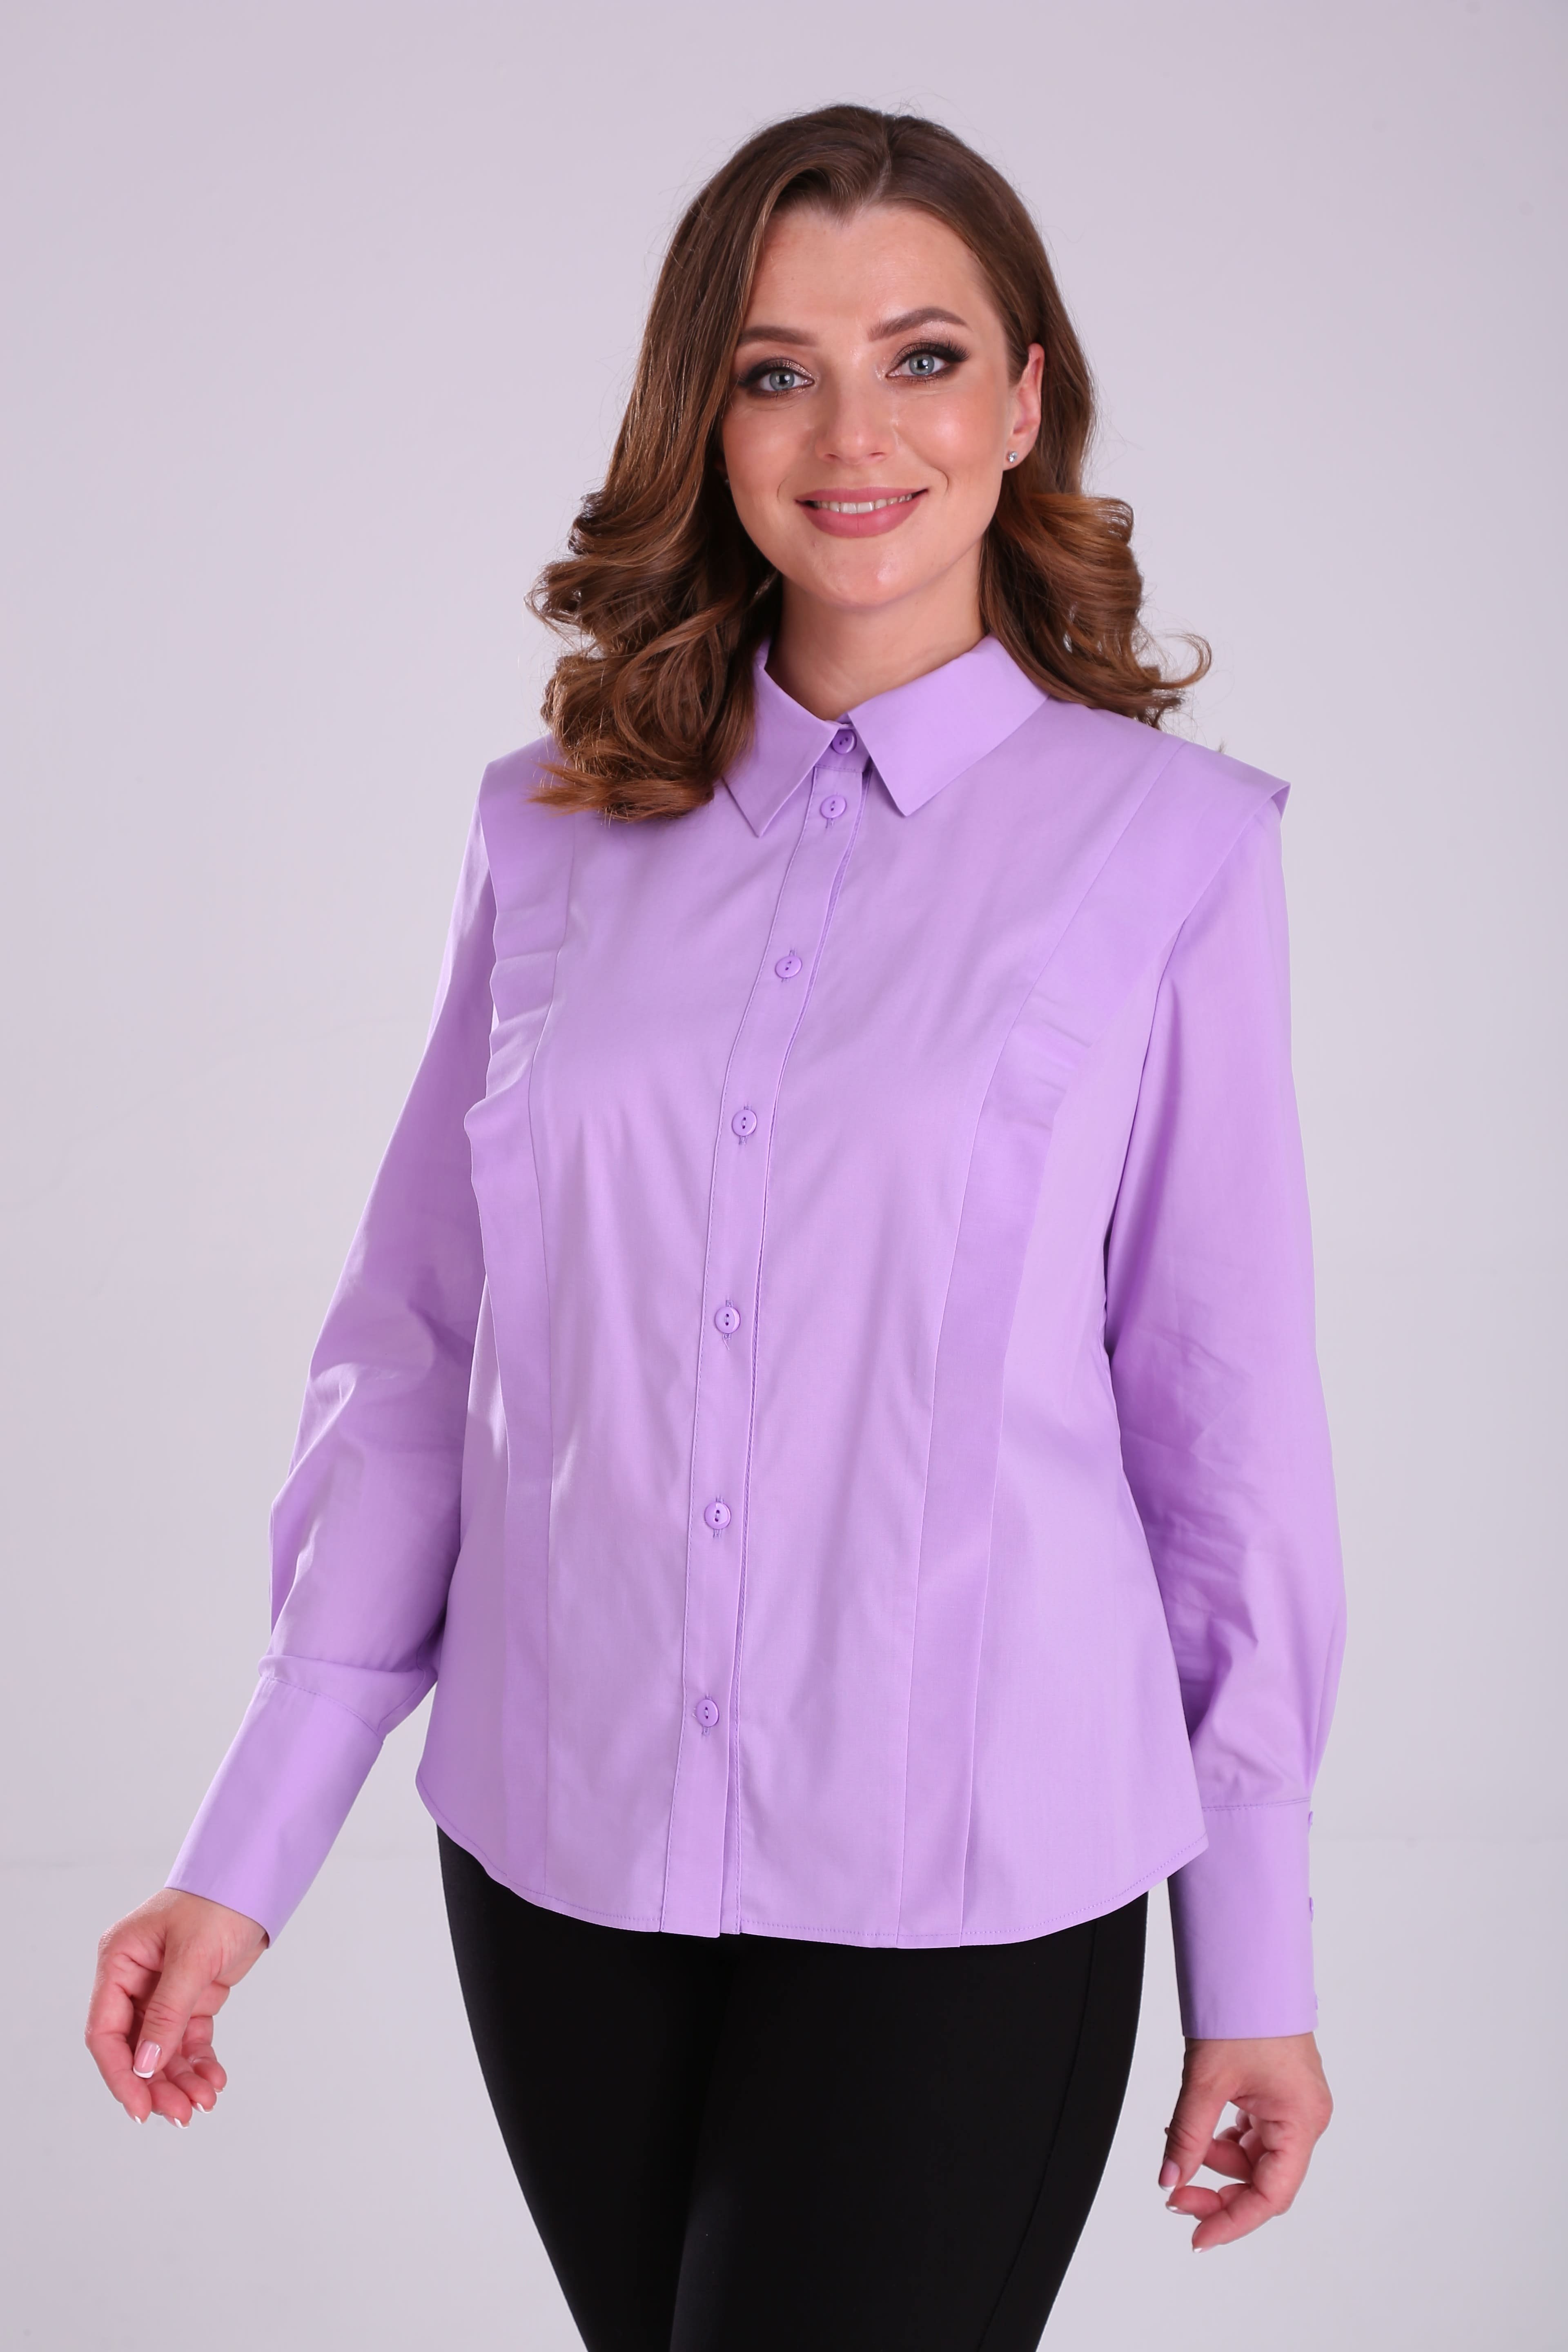 Женская рубашка с длинным рукавом и отделочными деталями